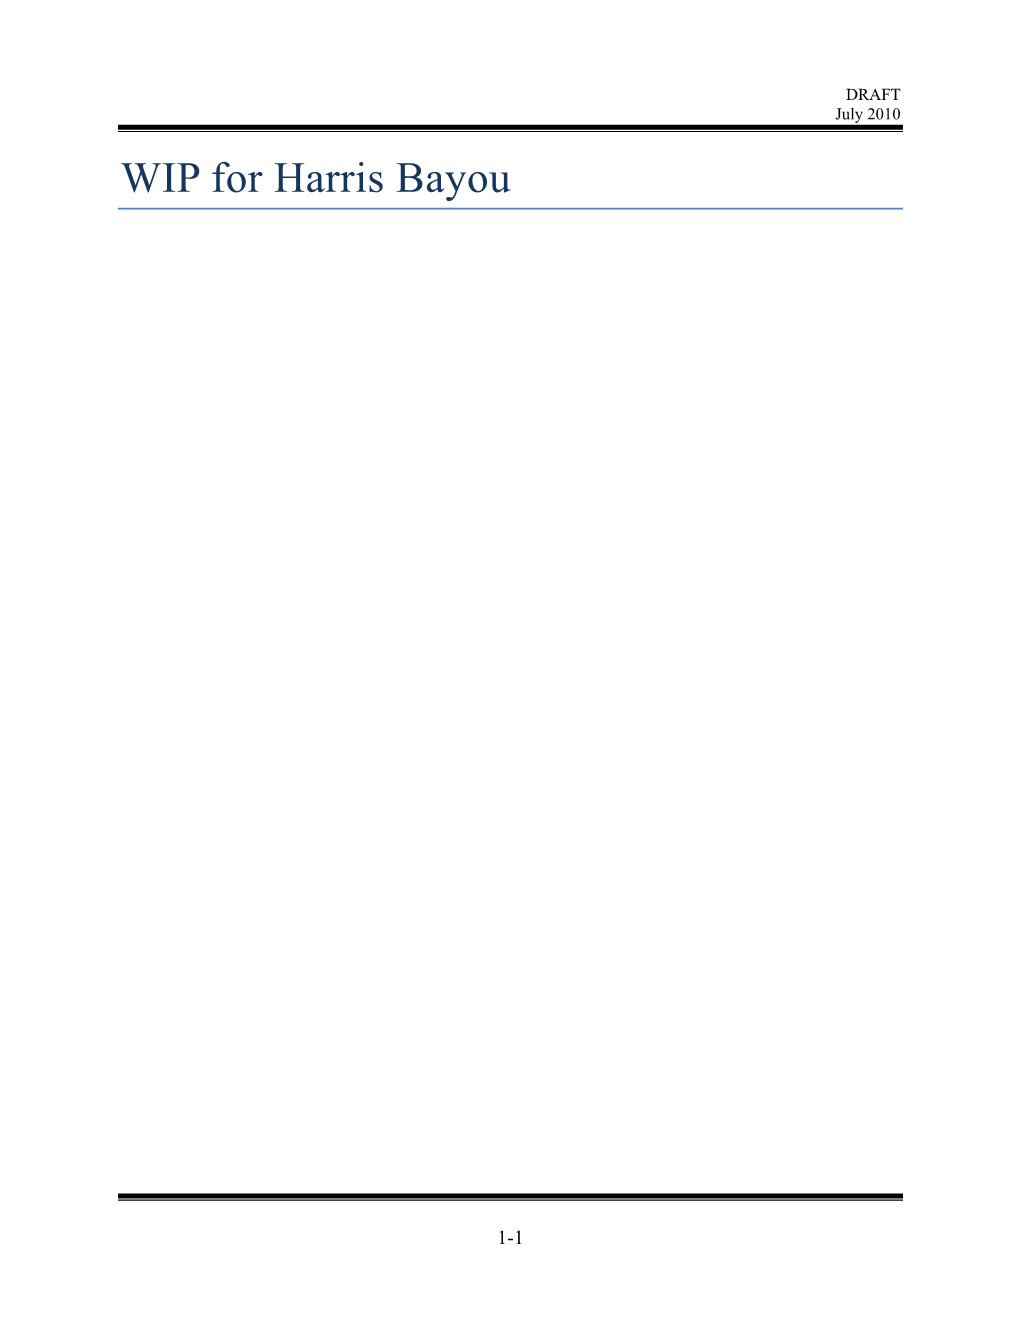 WIP for Harris Bayou